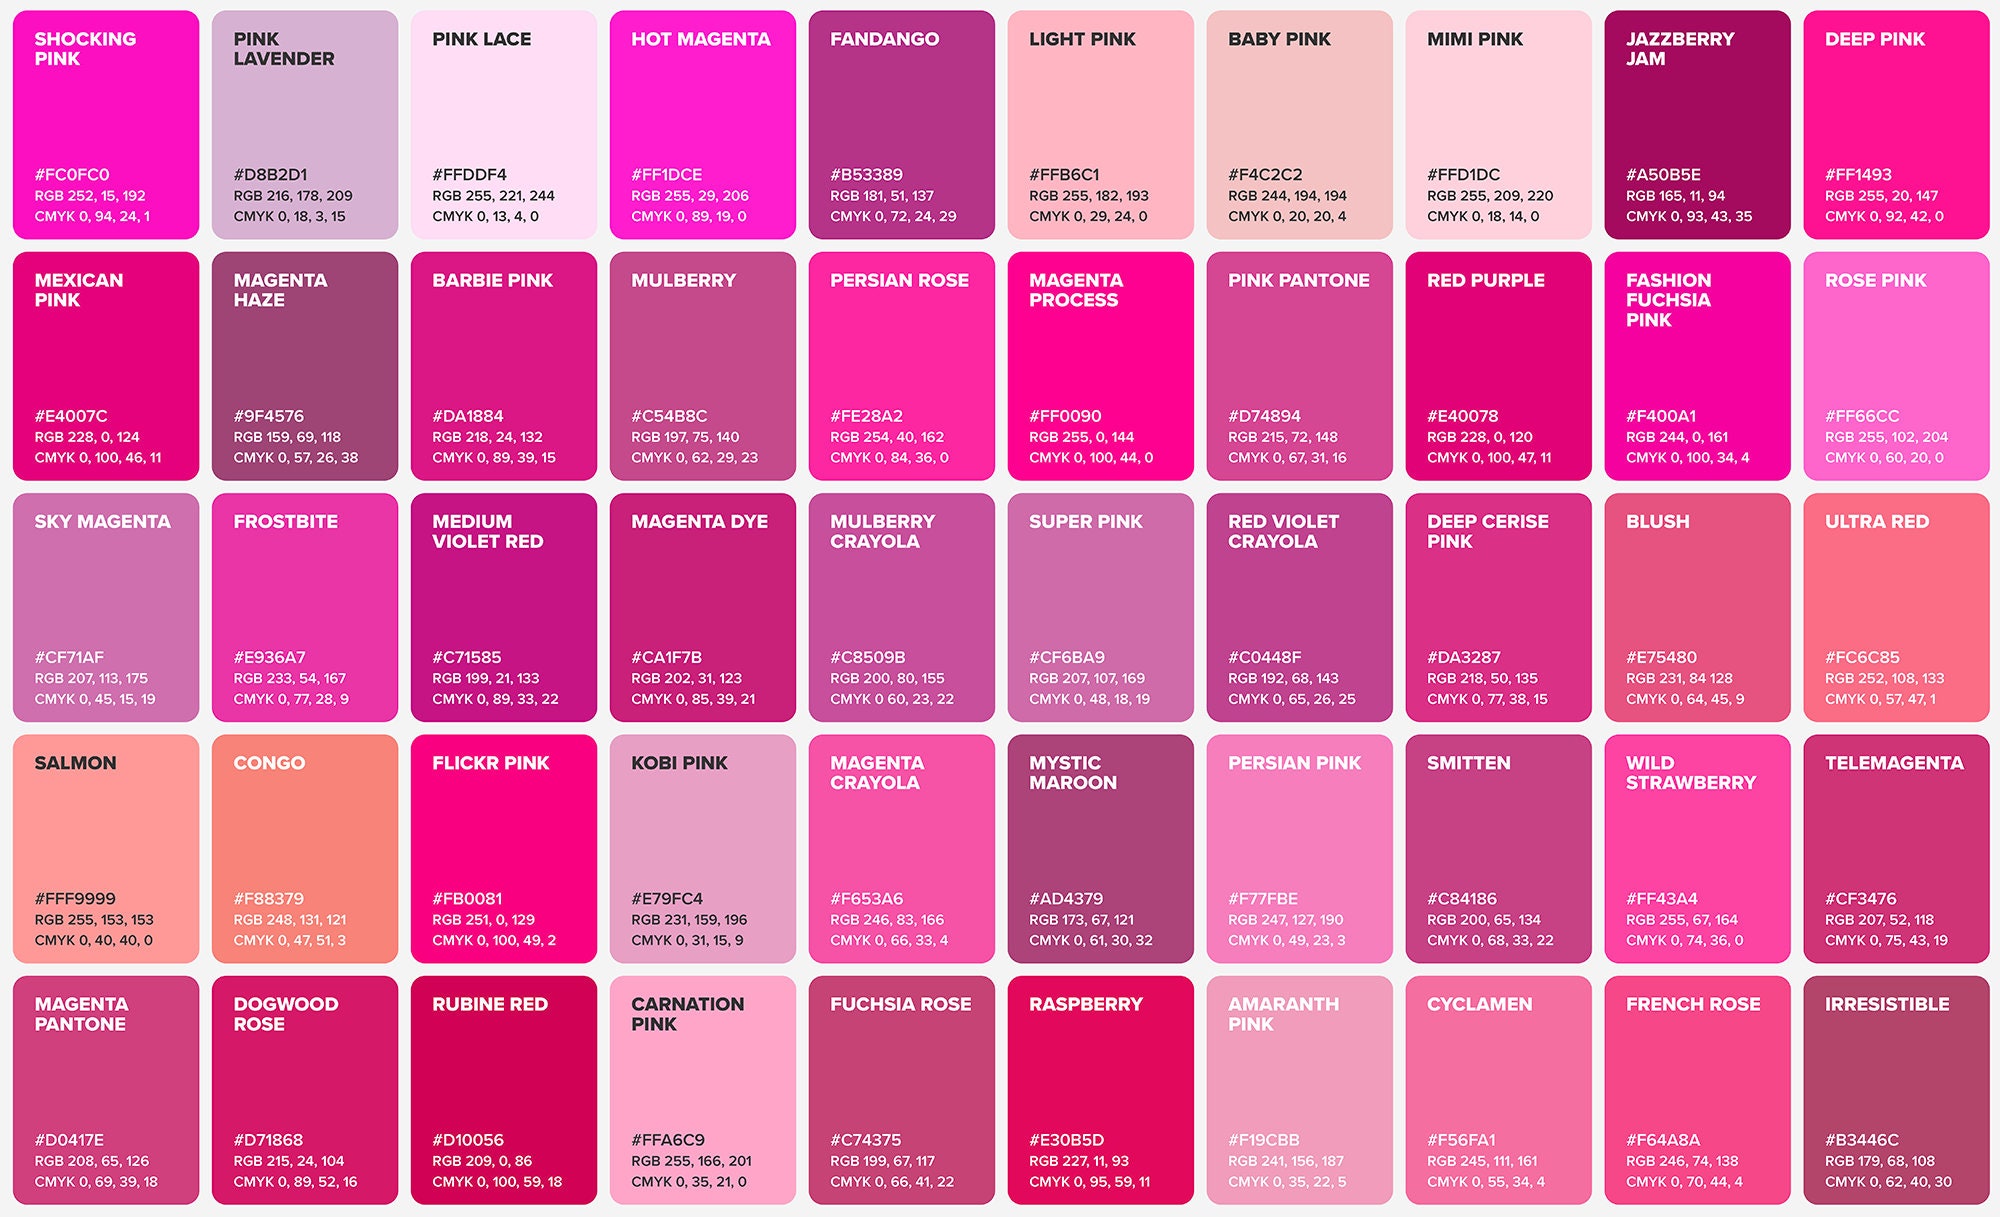 100 Pink Shades Color Poster, Wall Art Color, Chart & Sheet, Color Shades  of PINK, Poster Printable, Poster A0 A4 Digital Print -  Canada